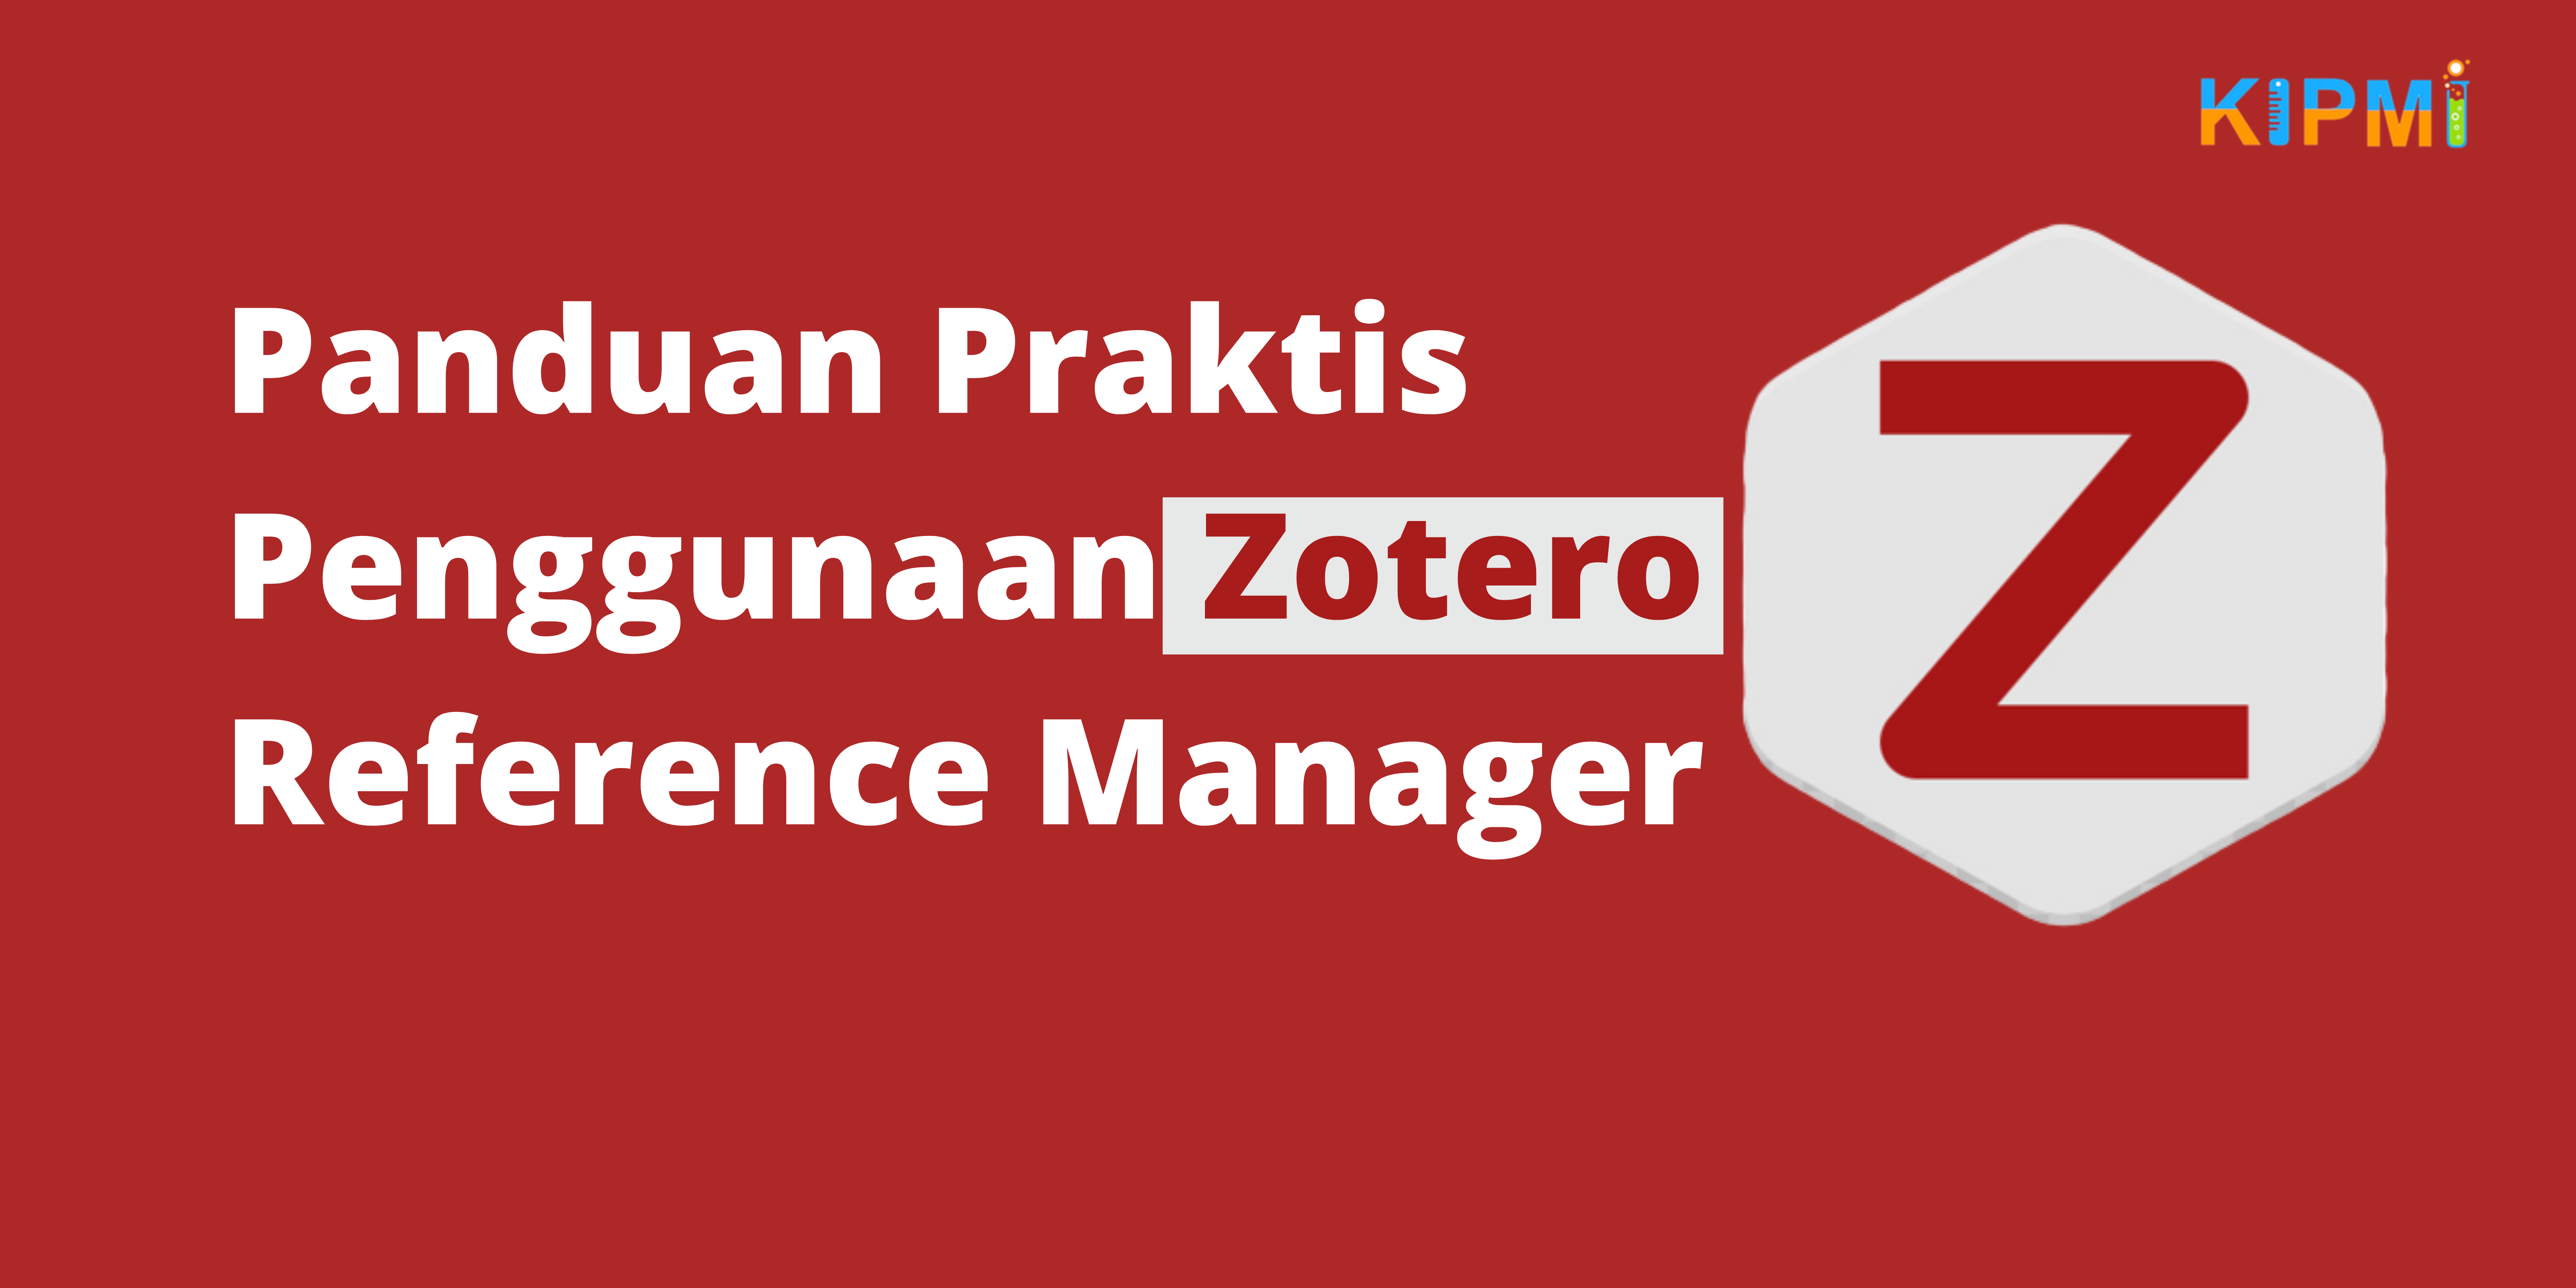 Panduan Praktis Penggunaan Zotero Reference Manager